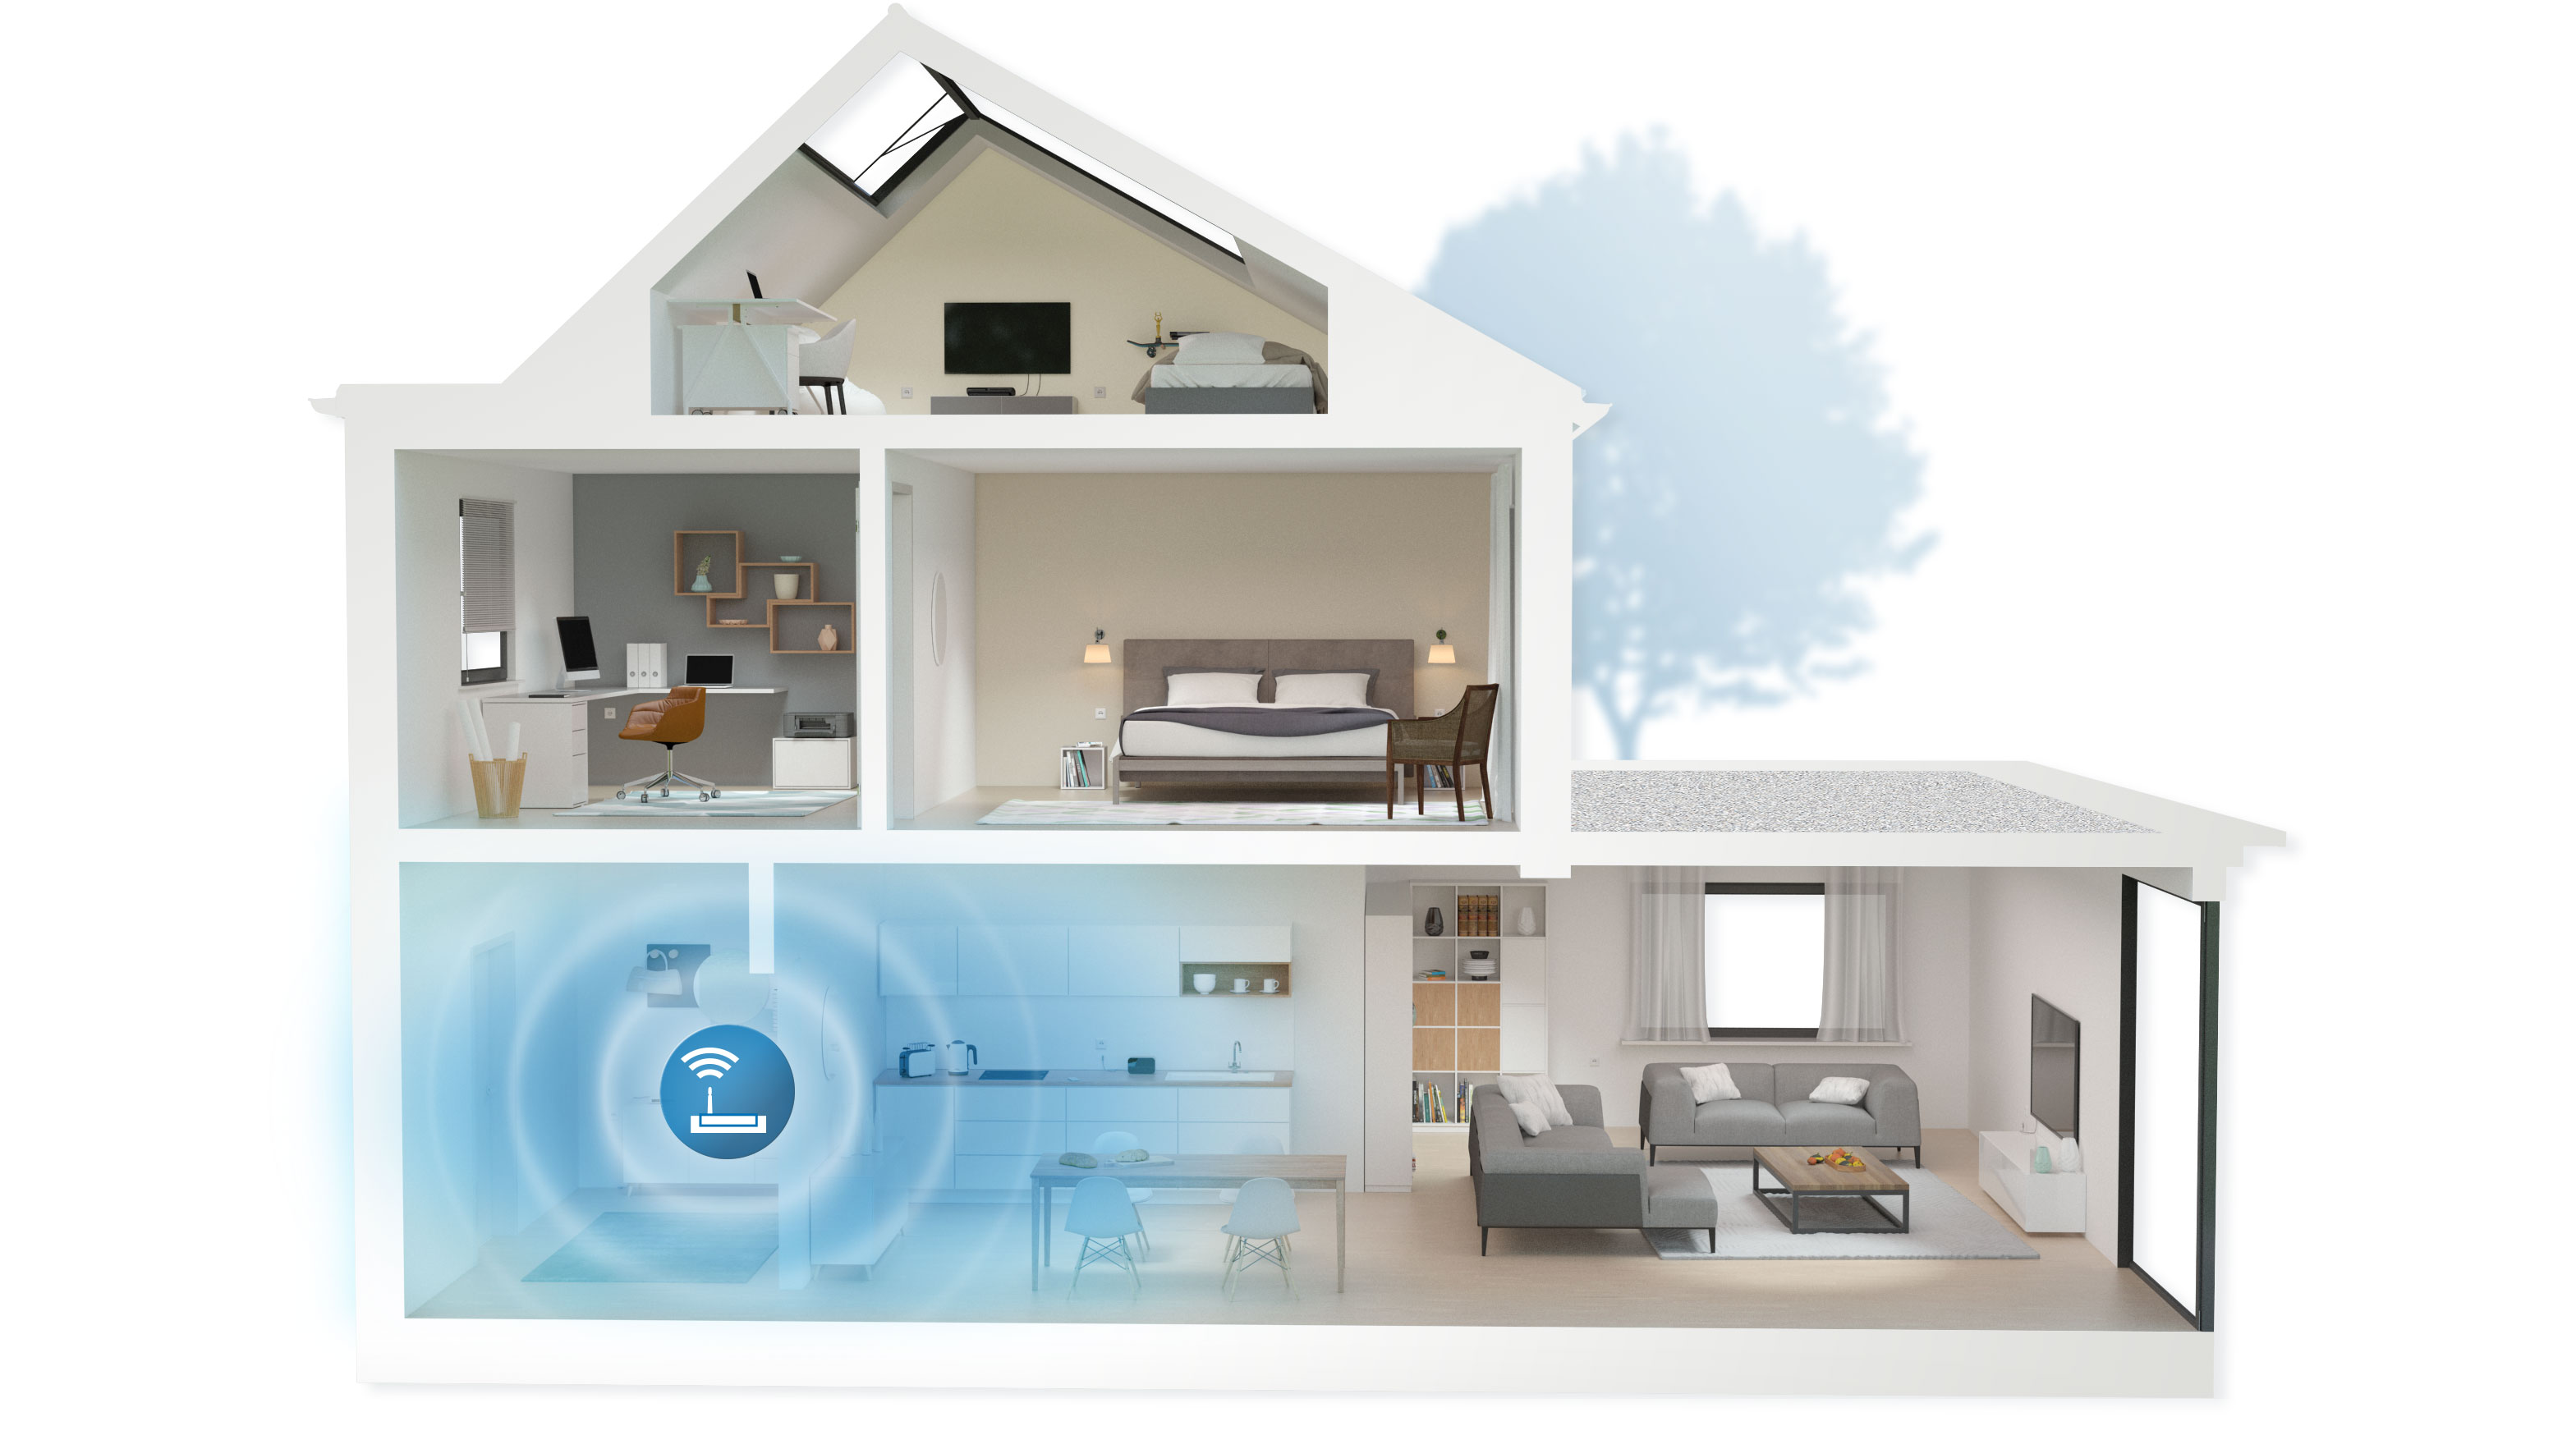 Devolo Magic 1 WiFi review: Perfect for the Wi-Fi-unfriendly home